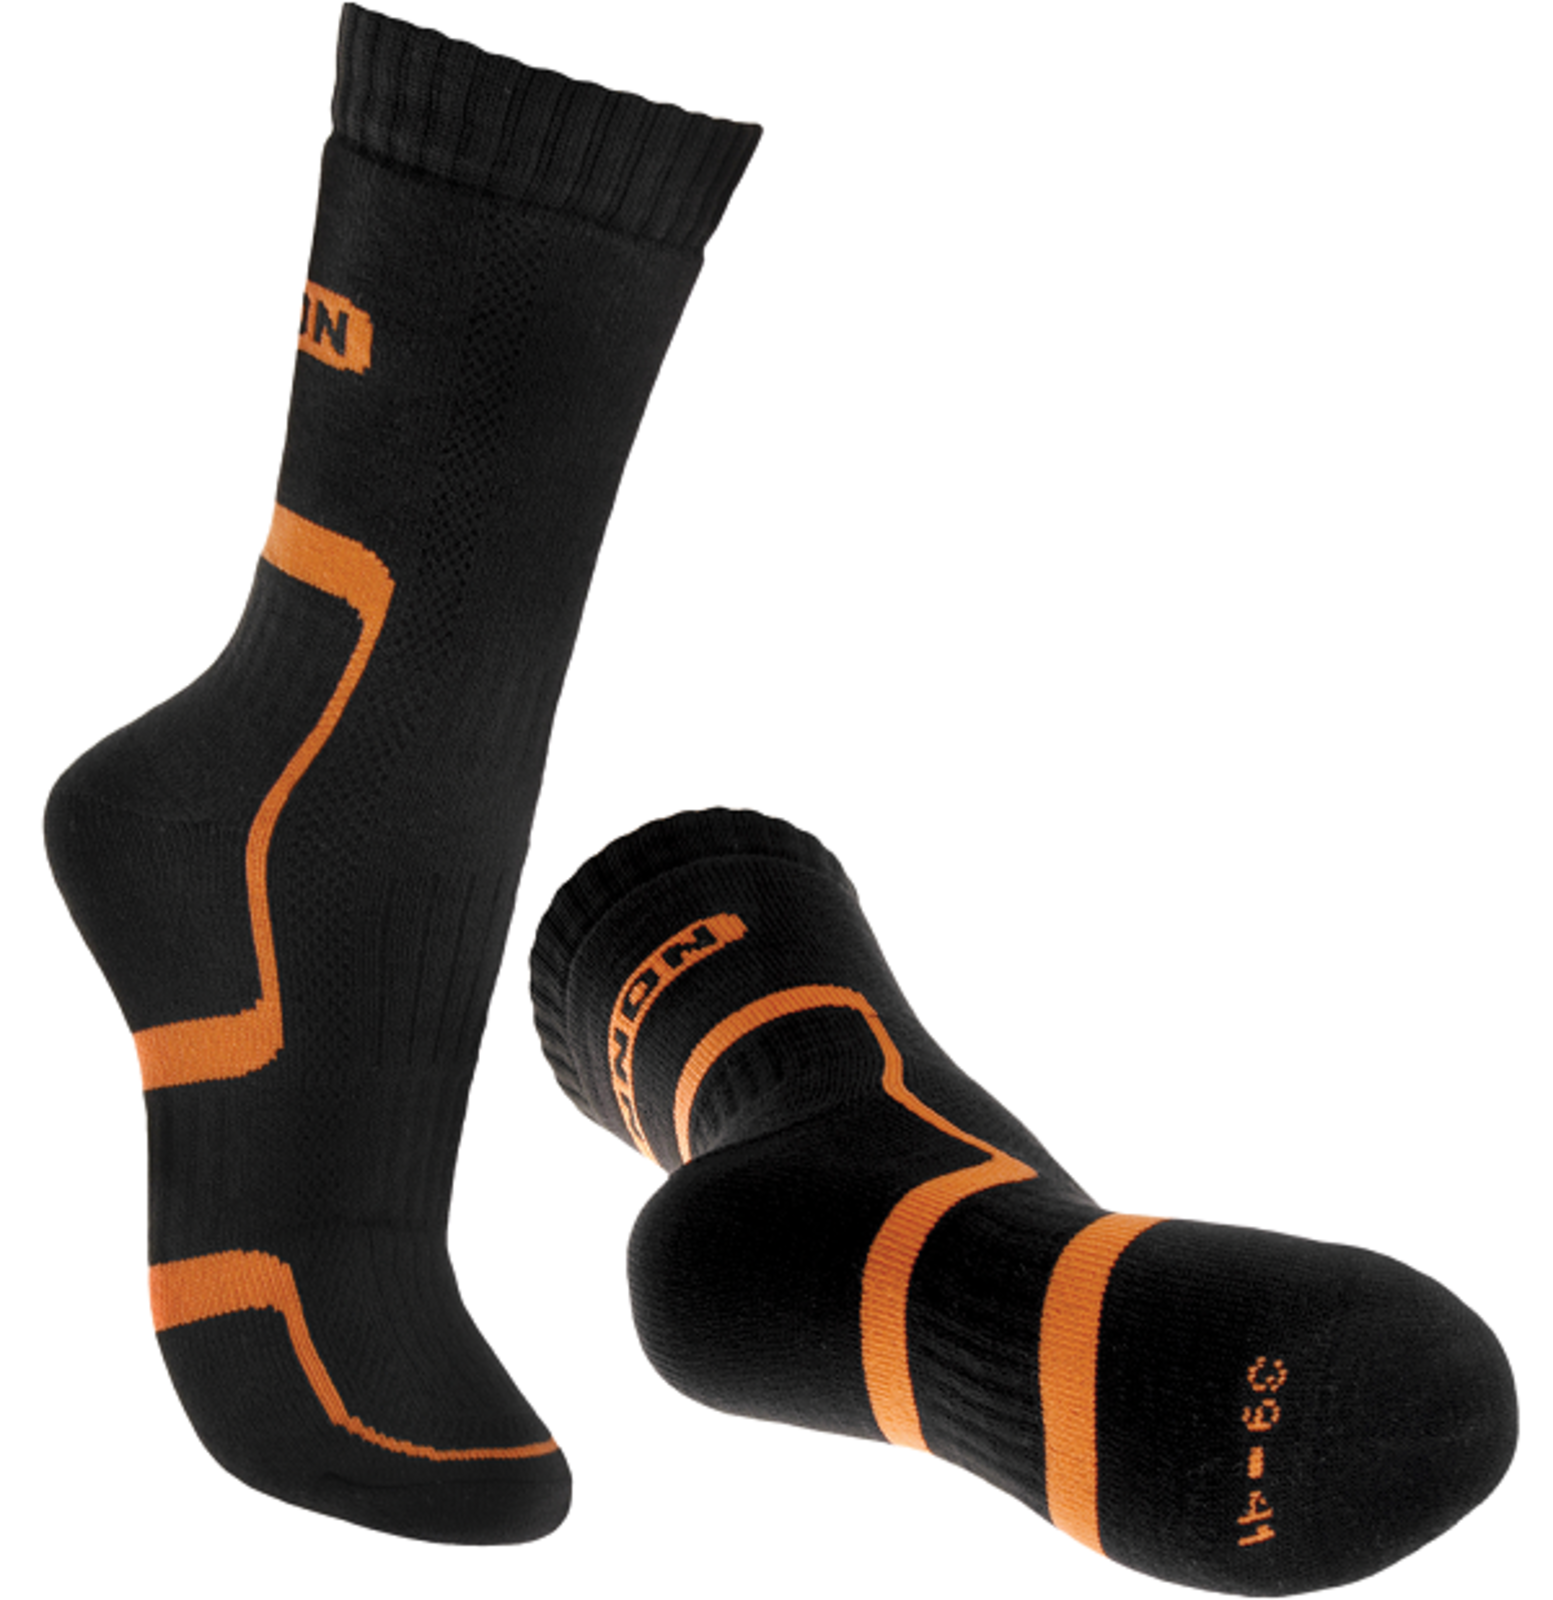 Ponožky Bennon Trek  - veľkosť: 48-49, farba: čierna/oranžová